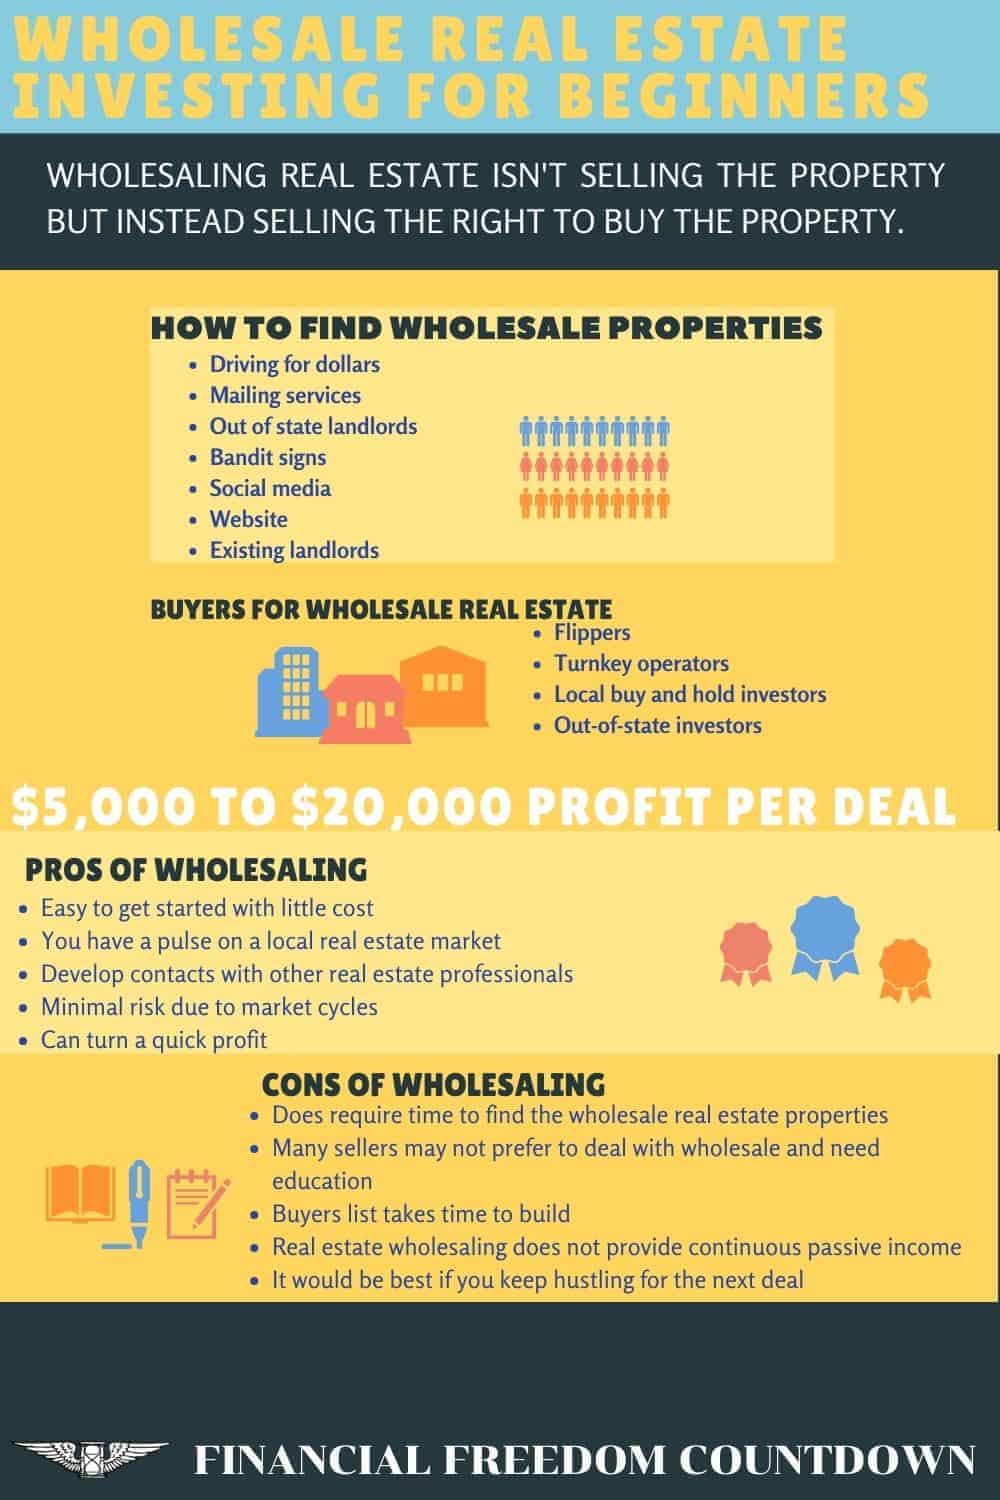 Real estate wholesaling